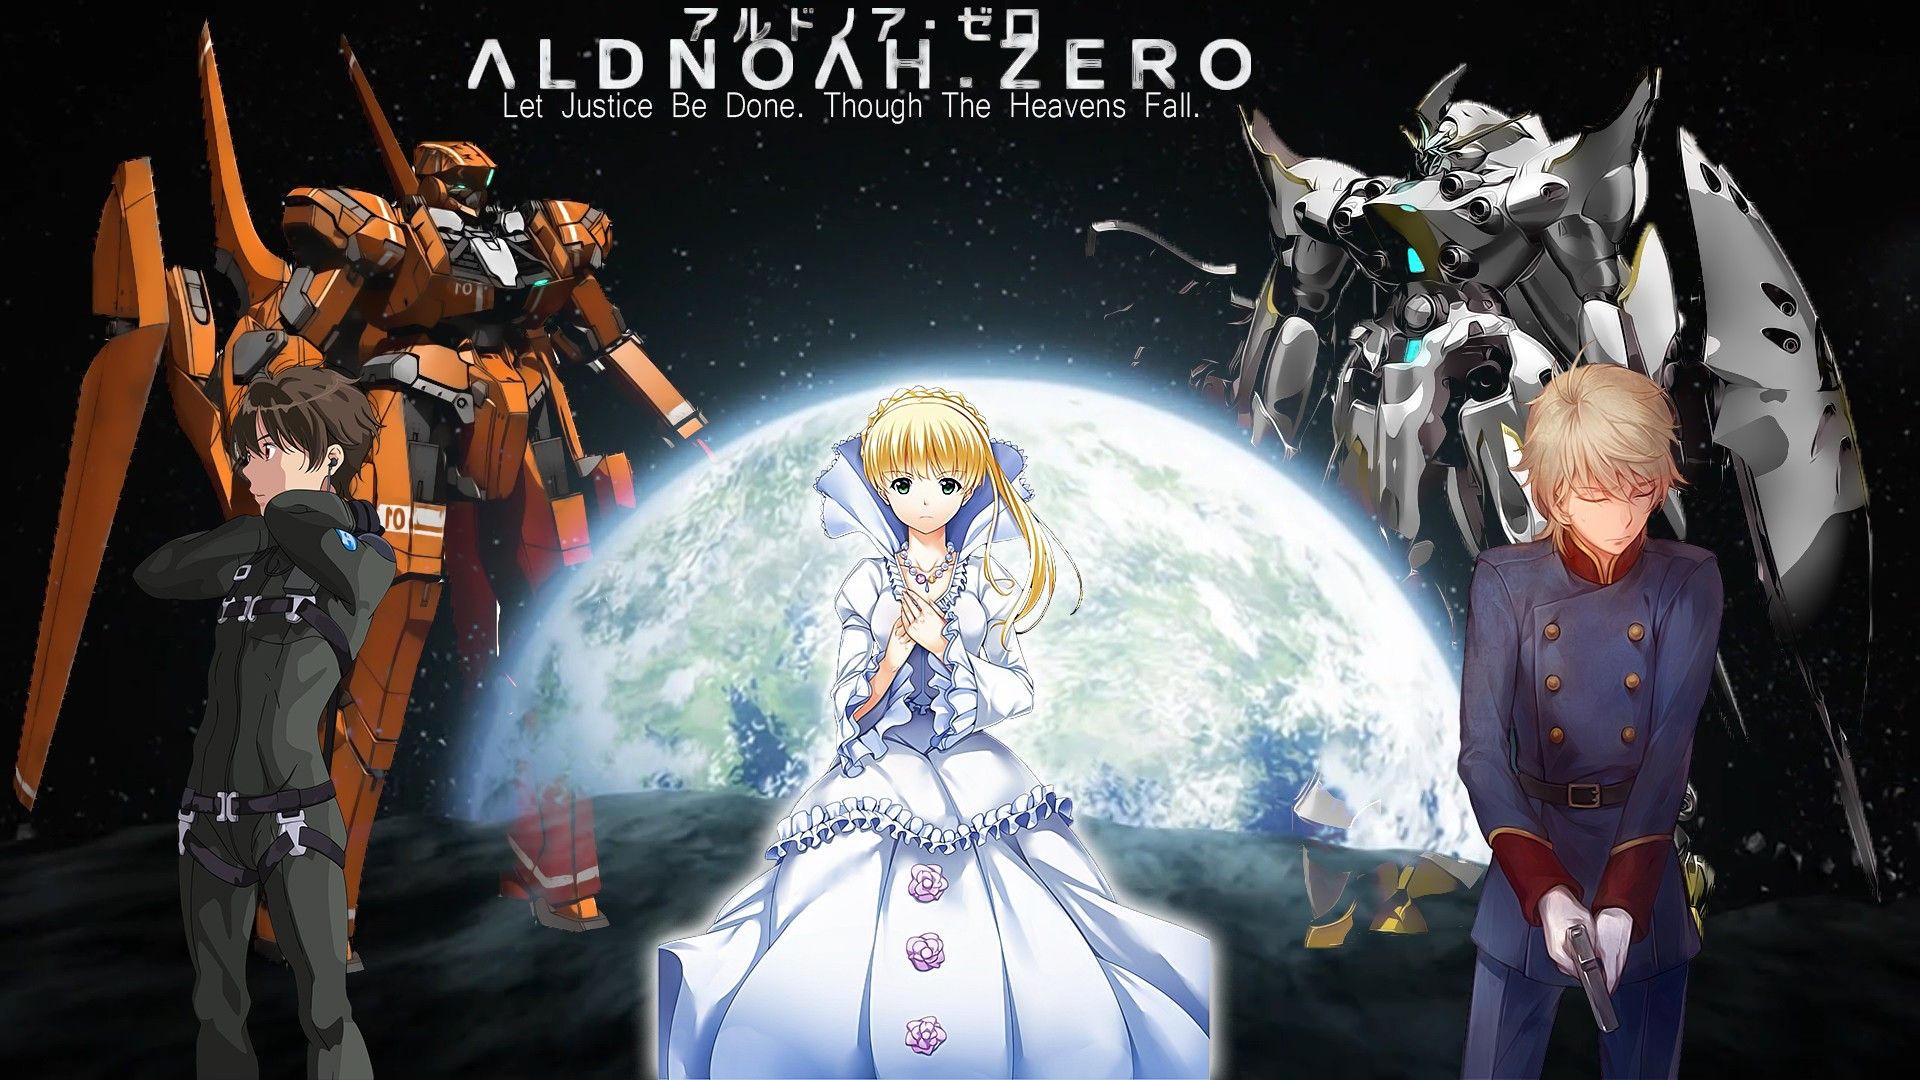 Slaine Troyard, Aldnoah.Zero, Asseylum Vers Allusia, Kaizuka Inaho